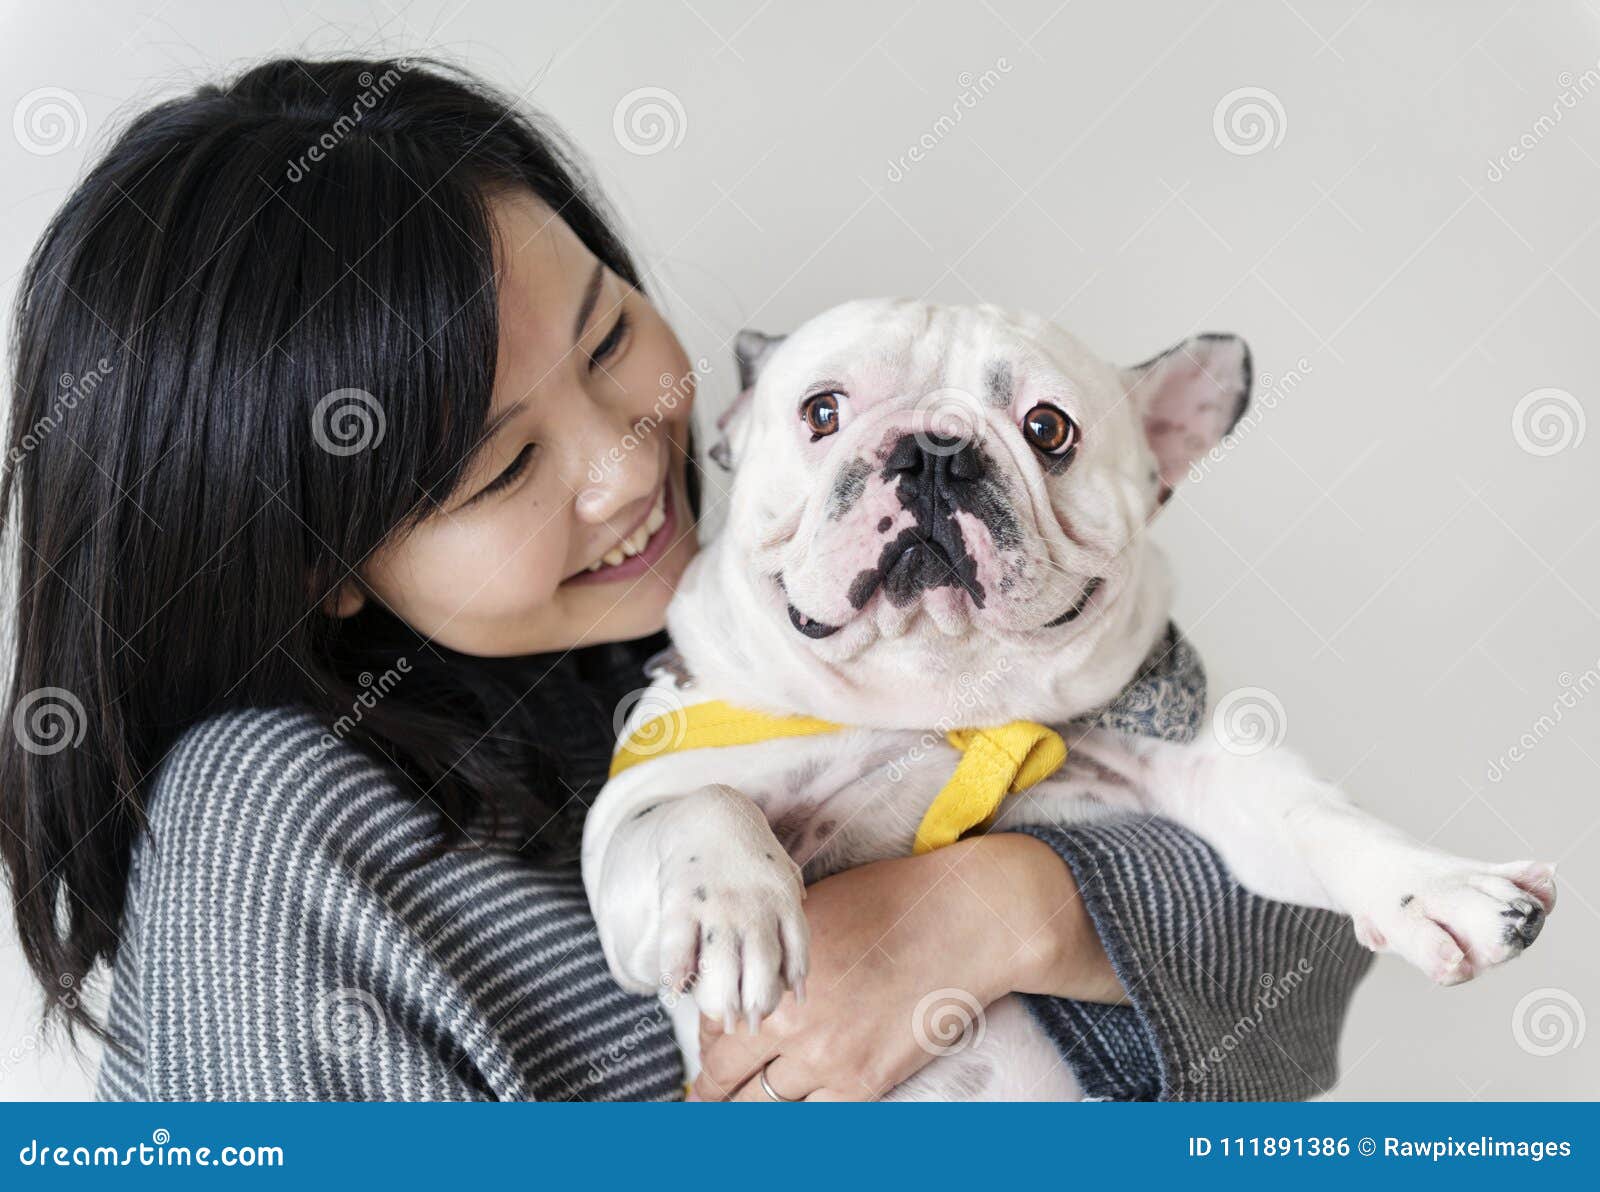 asian woman hugging dog closeup